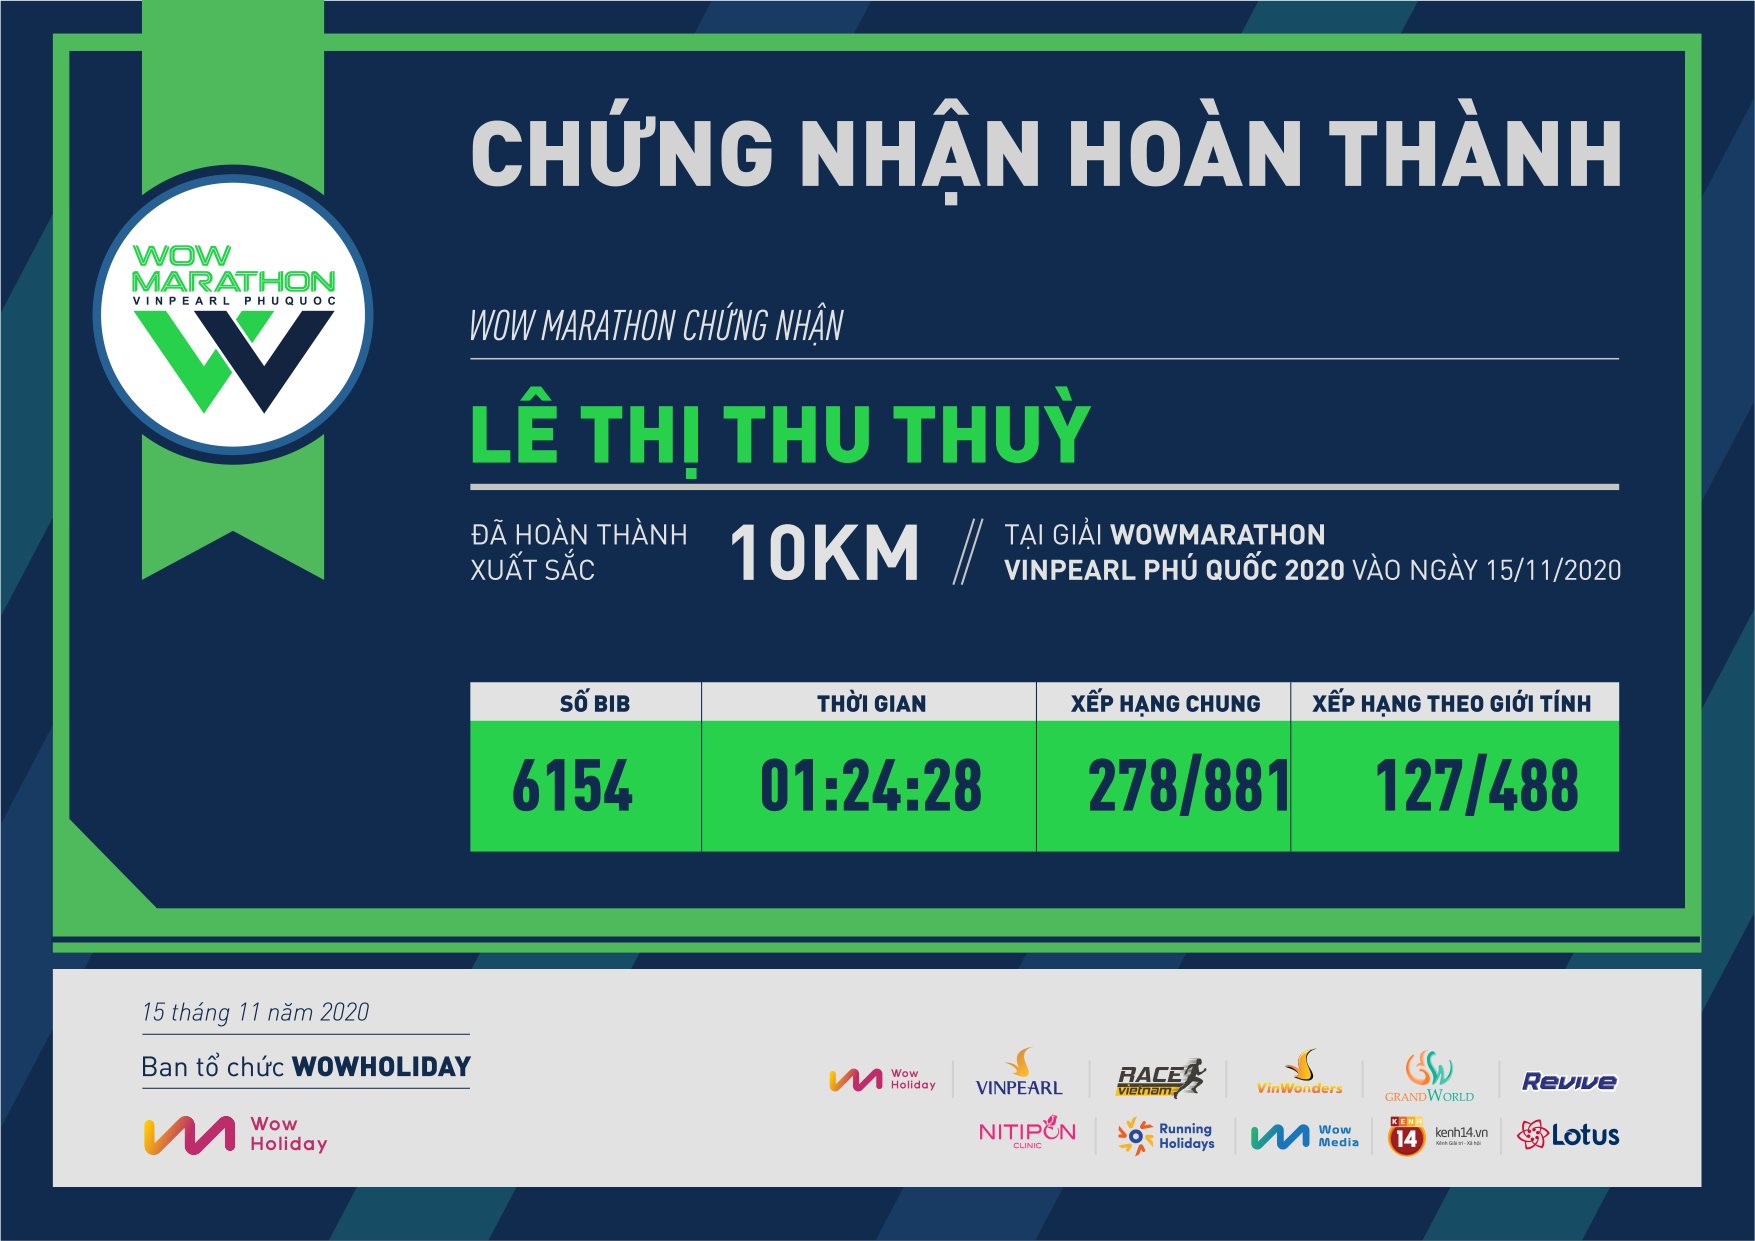 6154 - Lê Thị Thu Thuỳ